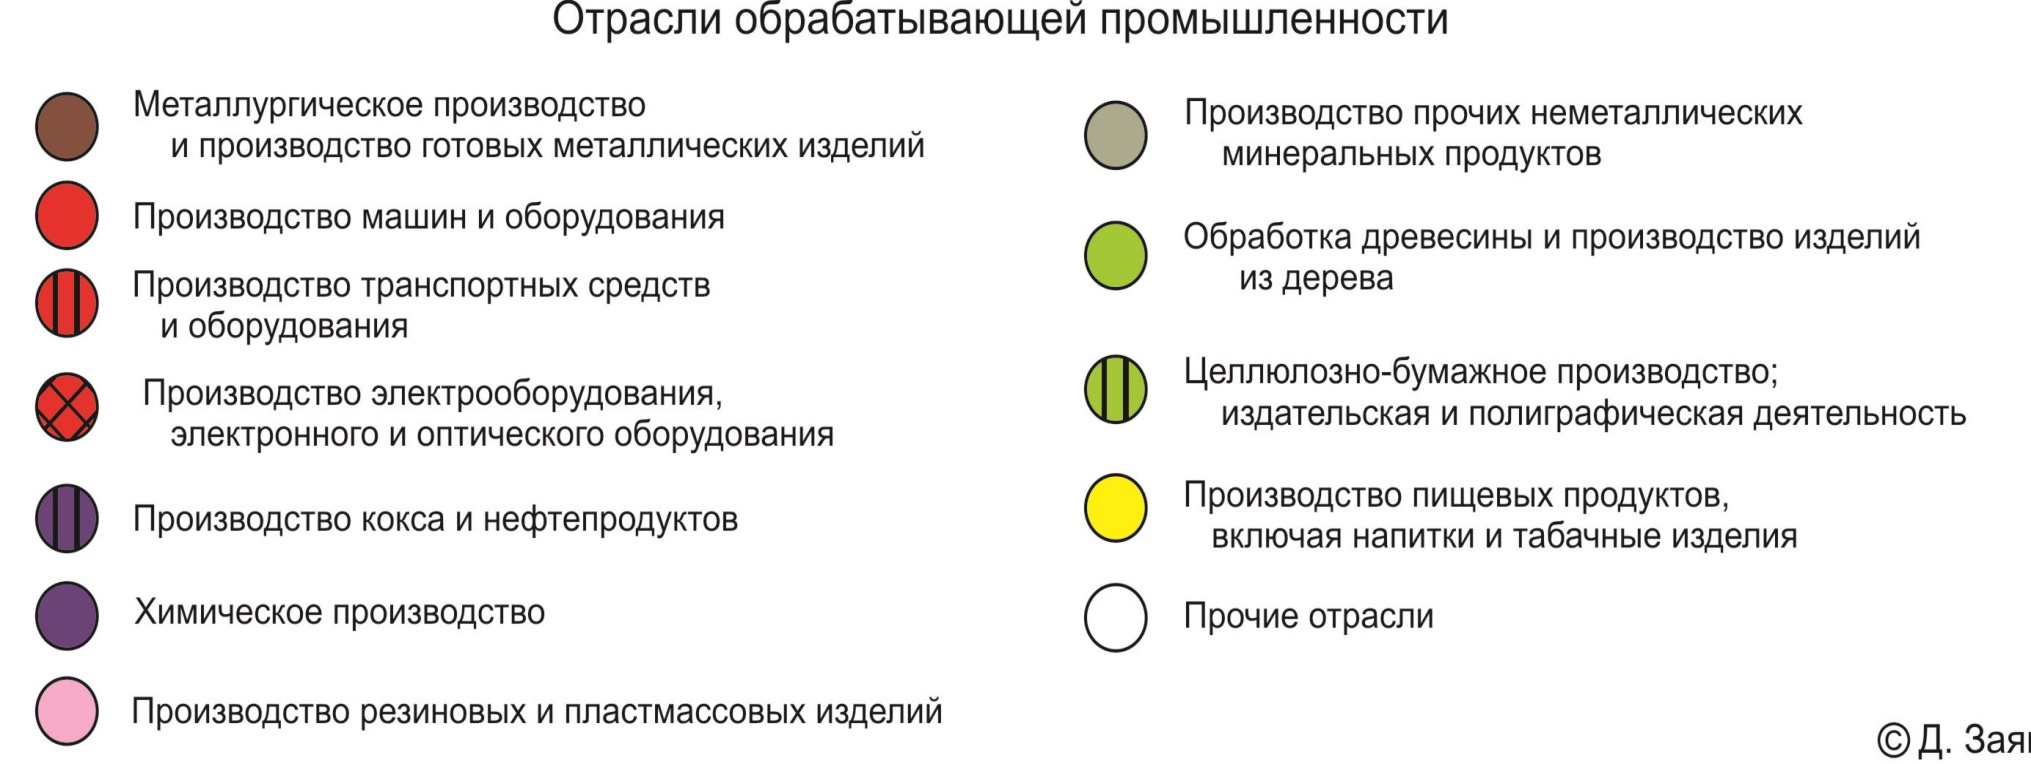 Бизнес карта Чувашской республики